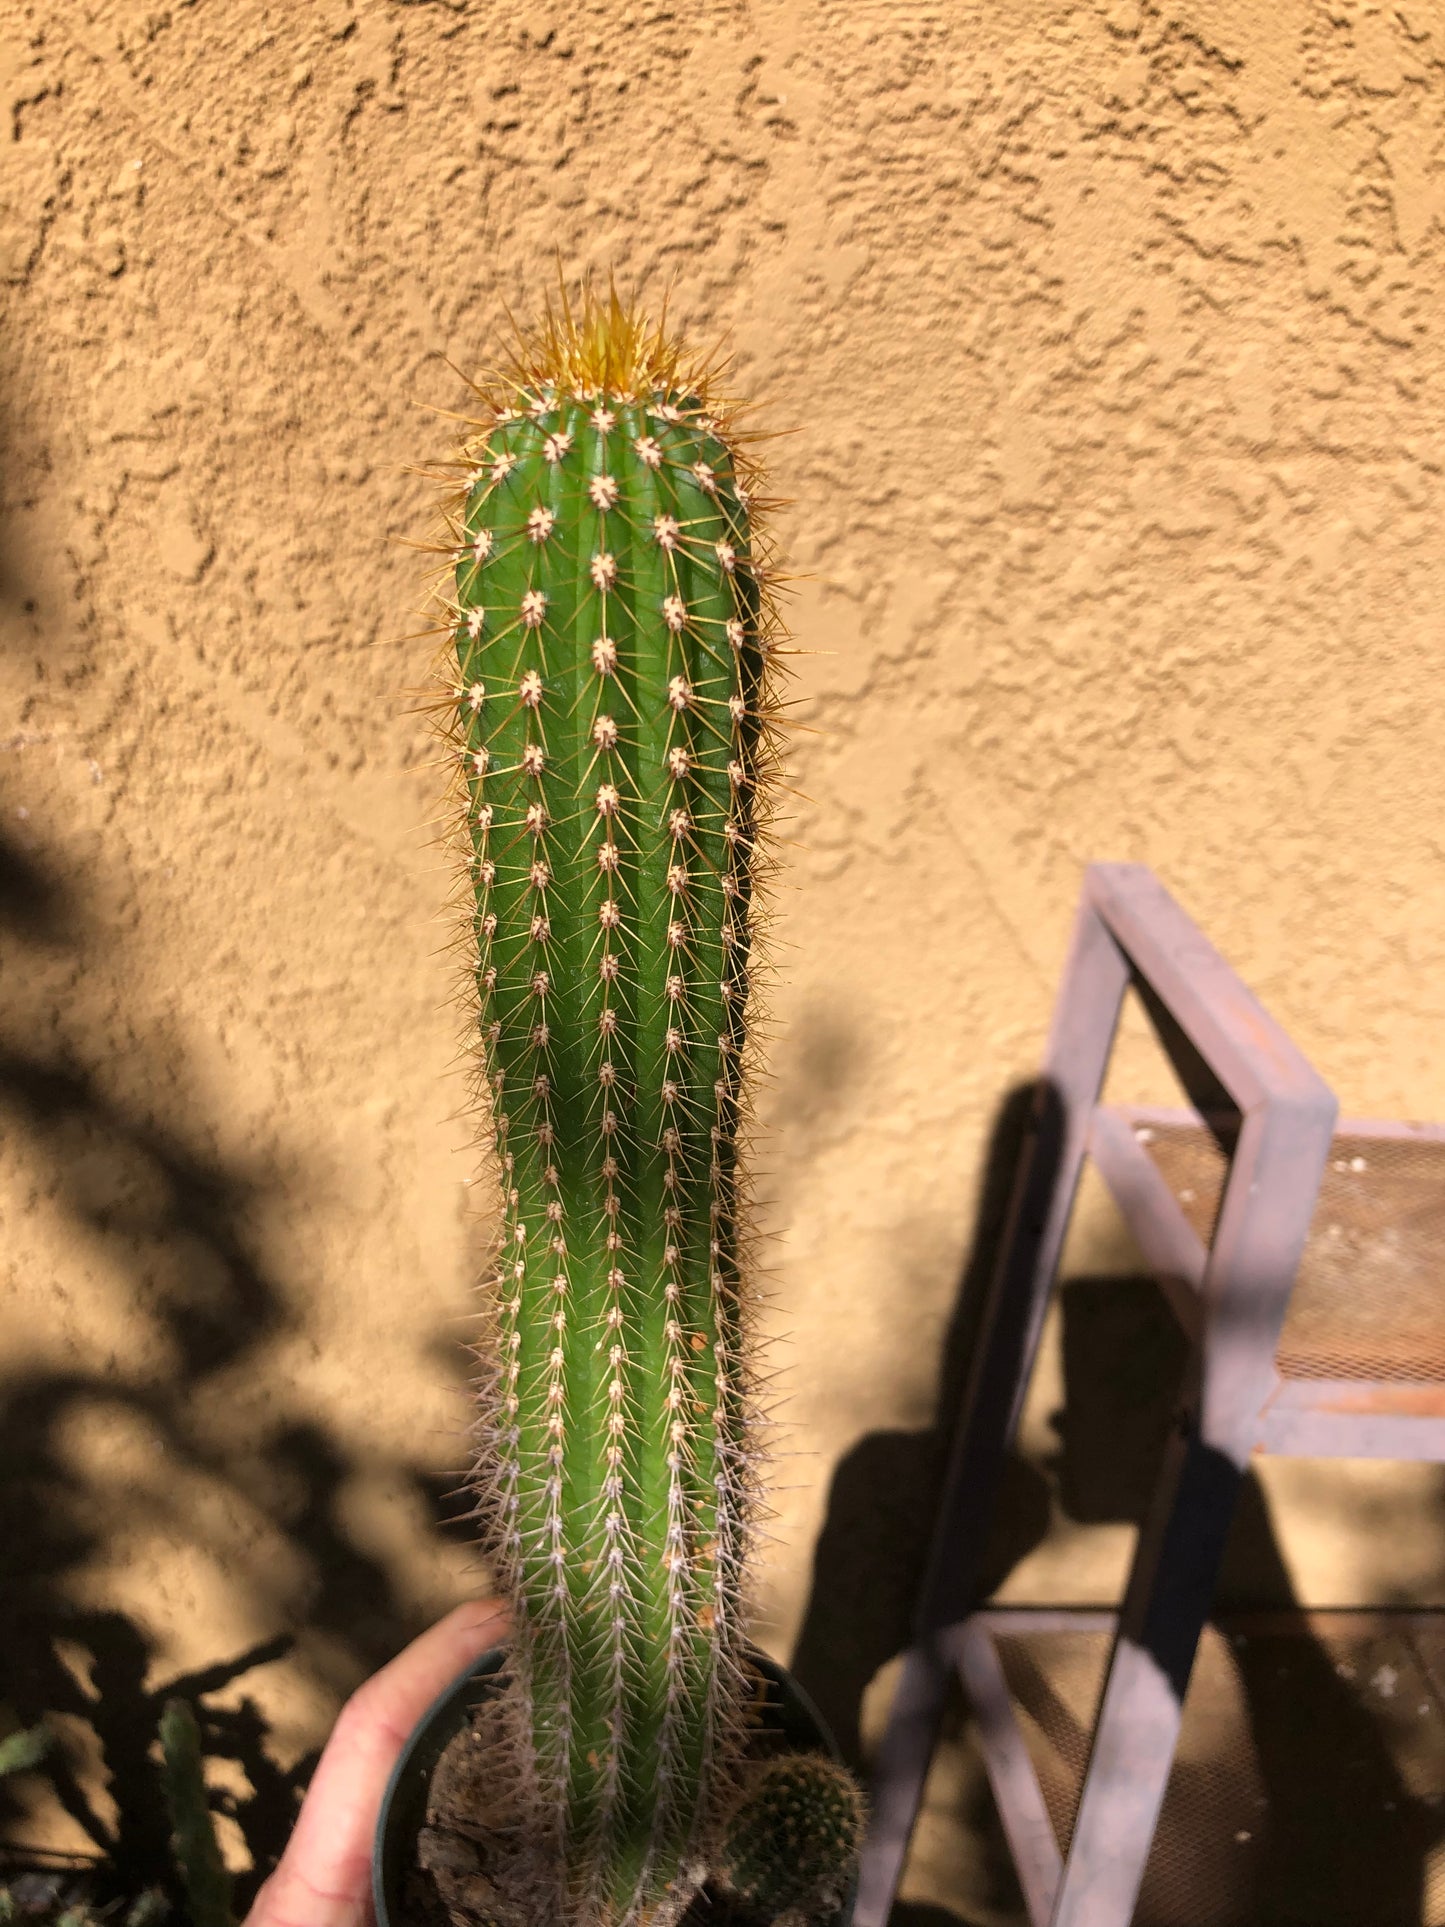 Golden Torch Cactus - Trichocereus spachianus 13" Tall #1Y